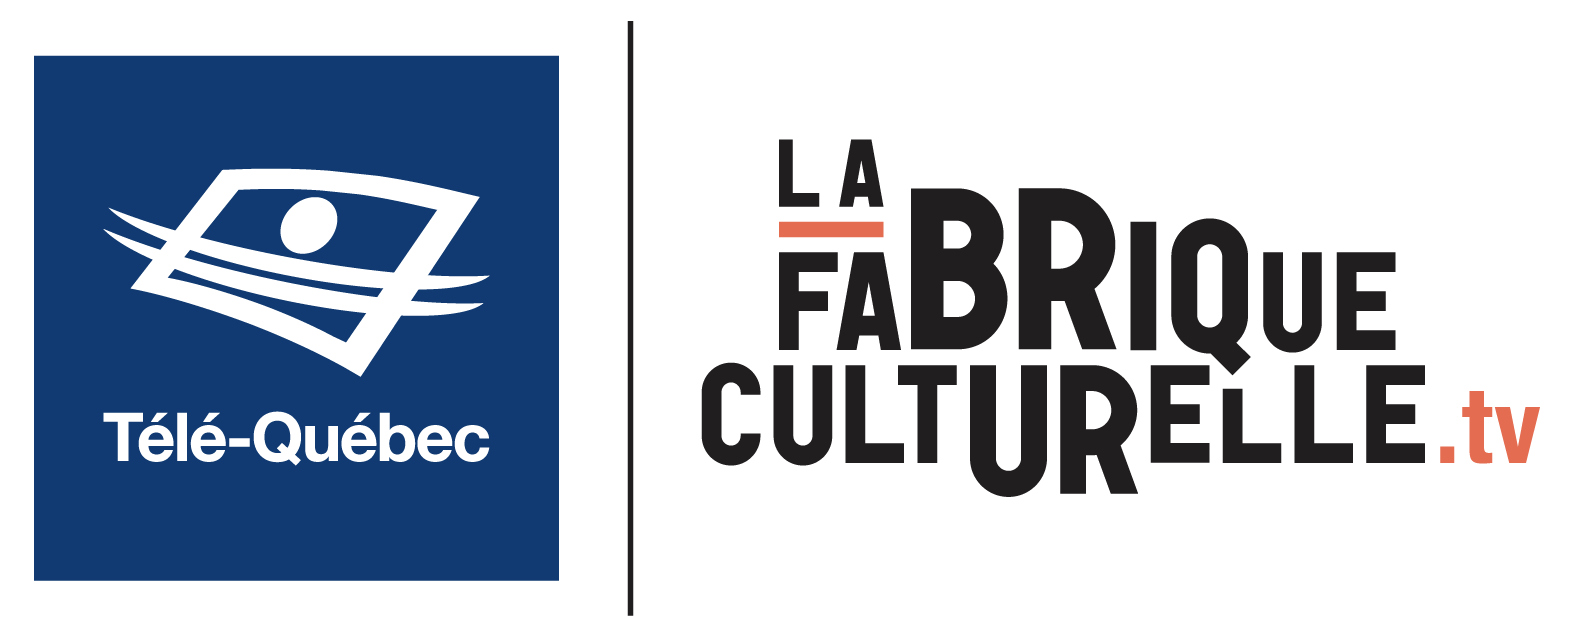 La Fabrique Culturelle / Télé-Québec